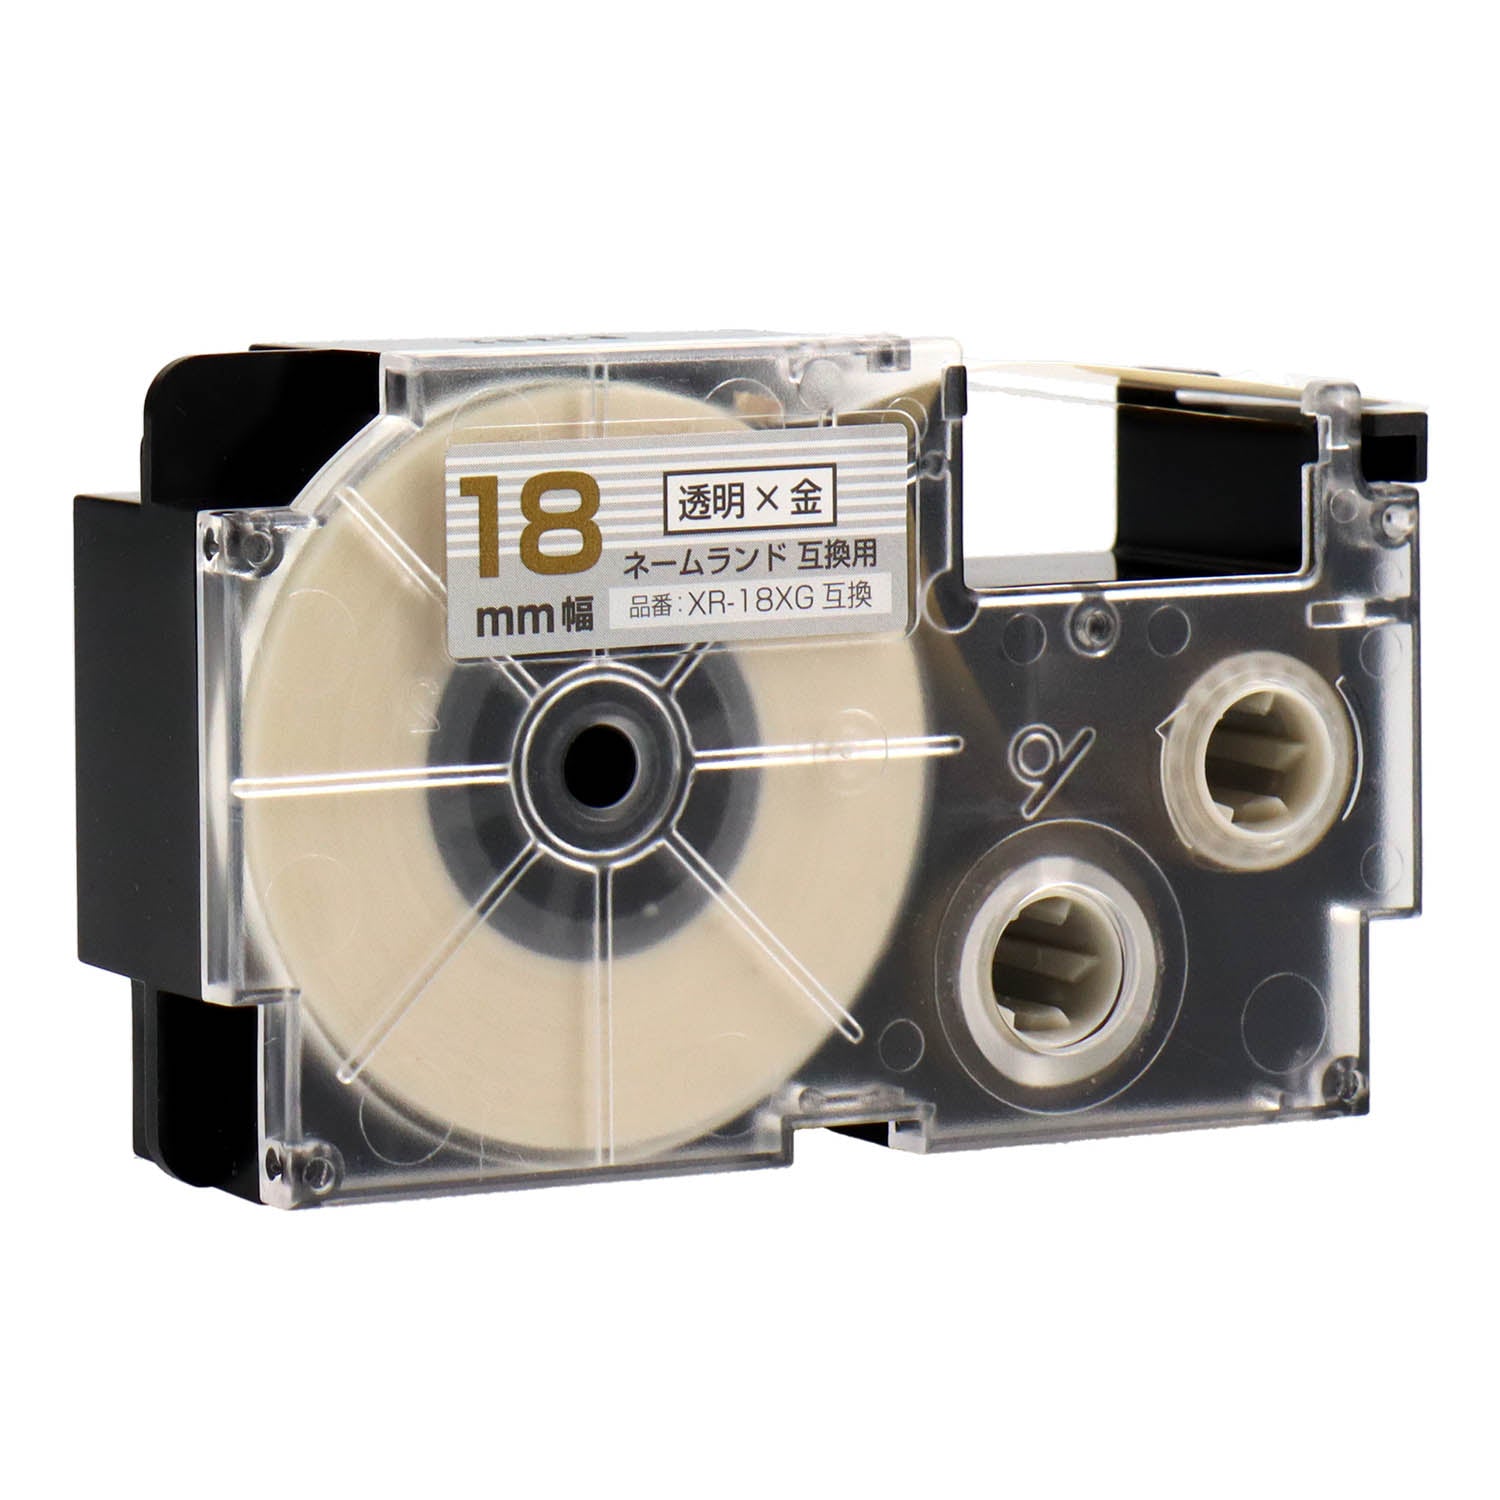 ネームランド用互換テープカートリッジ 透明×金文字 18mm